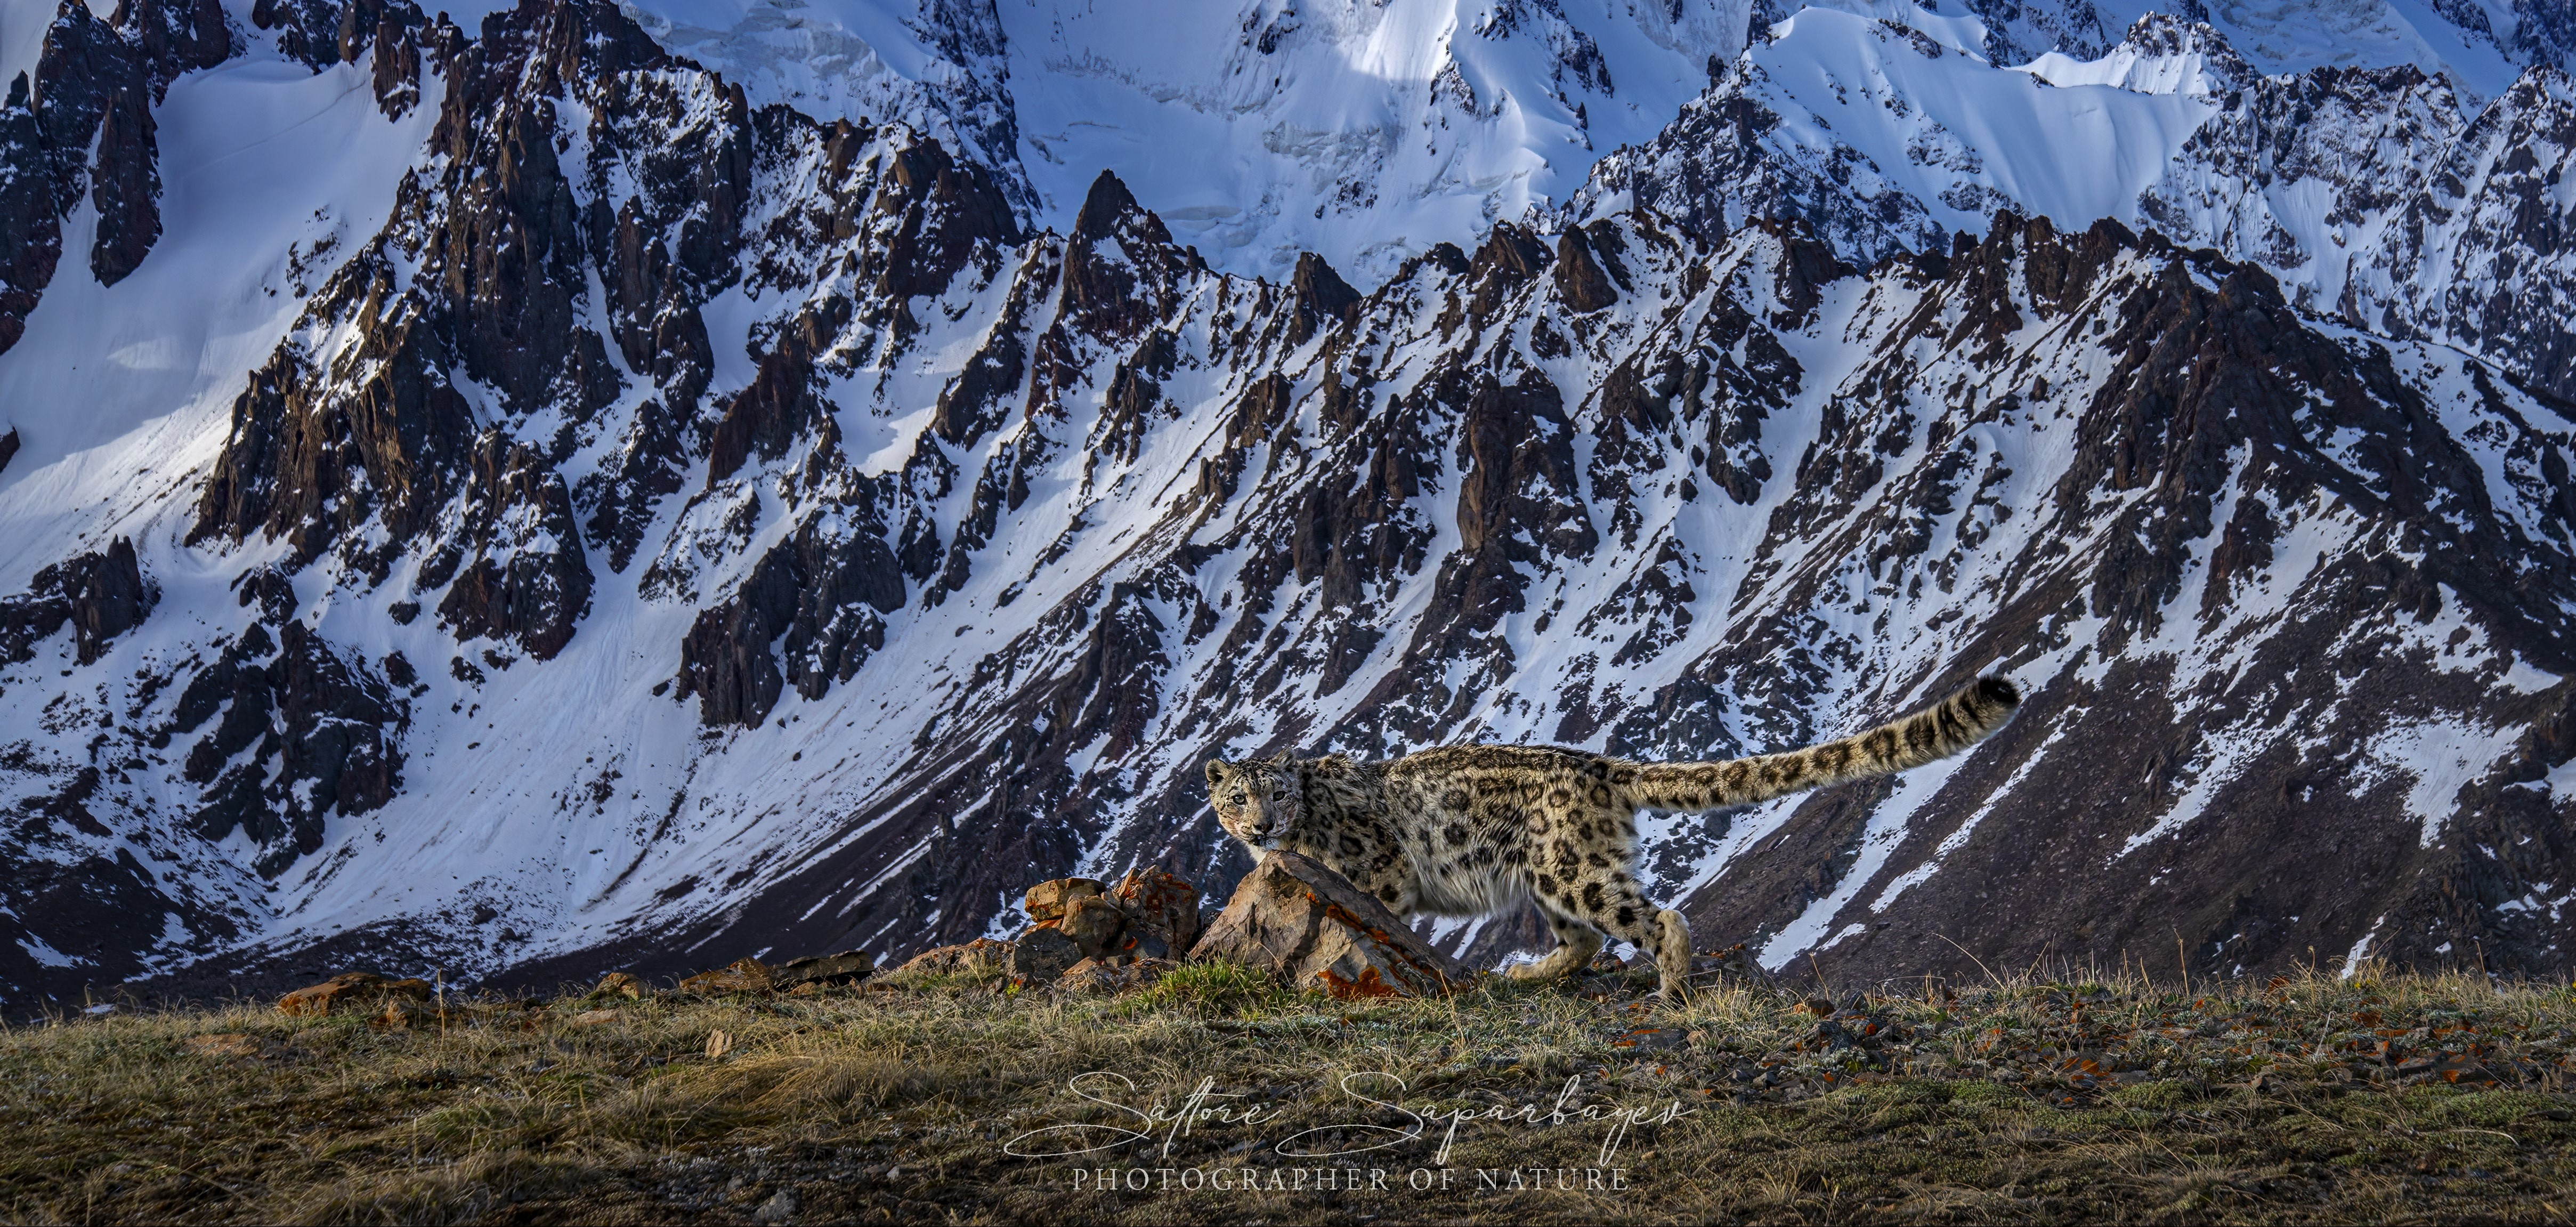 Leopardo de las nieves, norte de Tien Shan, Kazajstán © Saltore Saparbayev